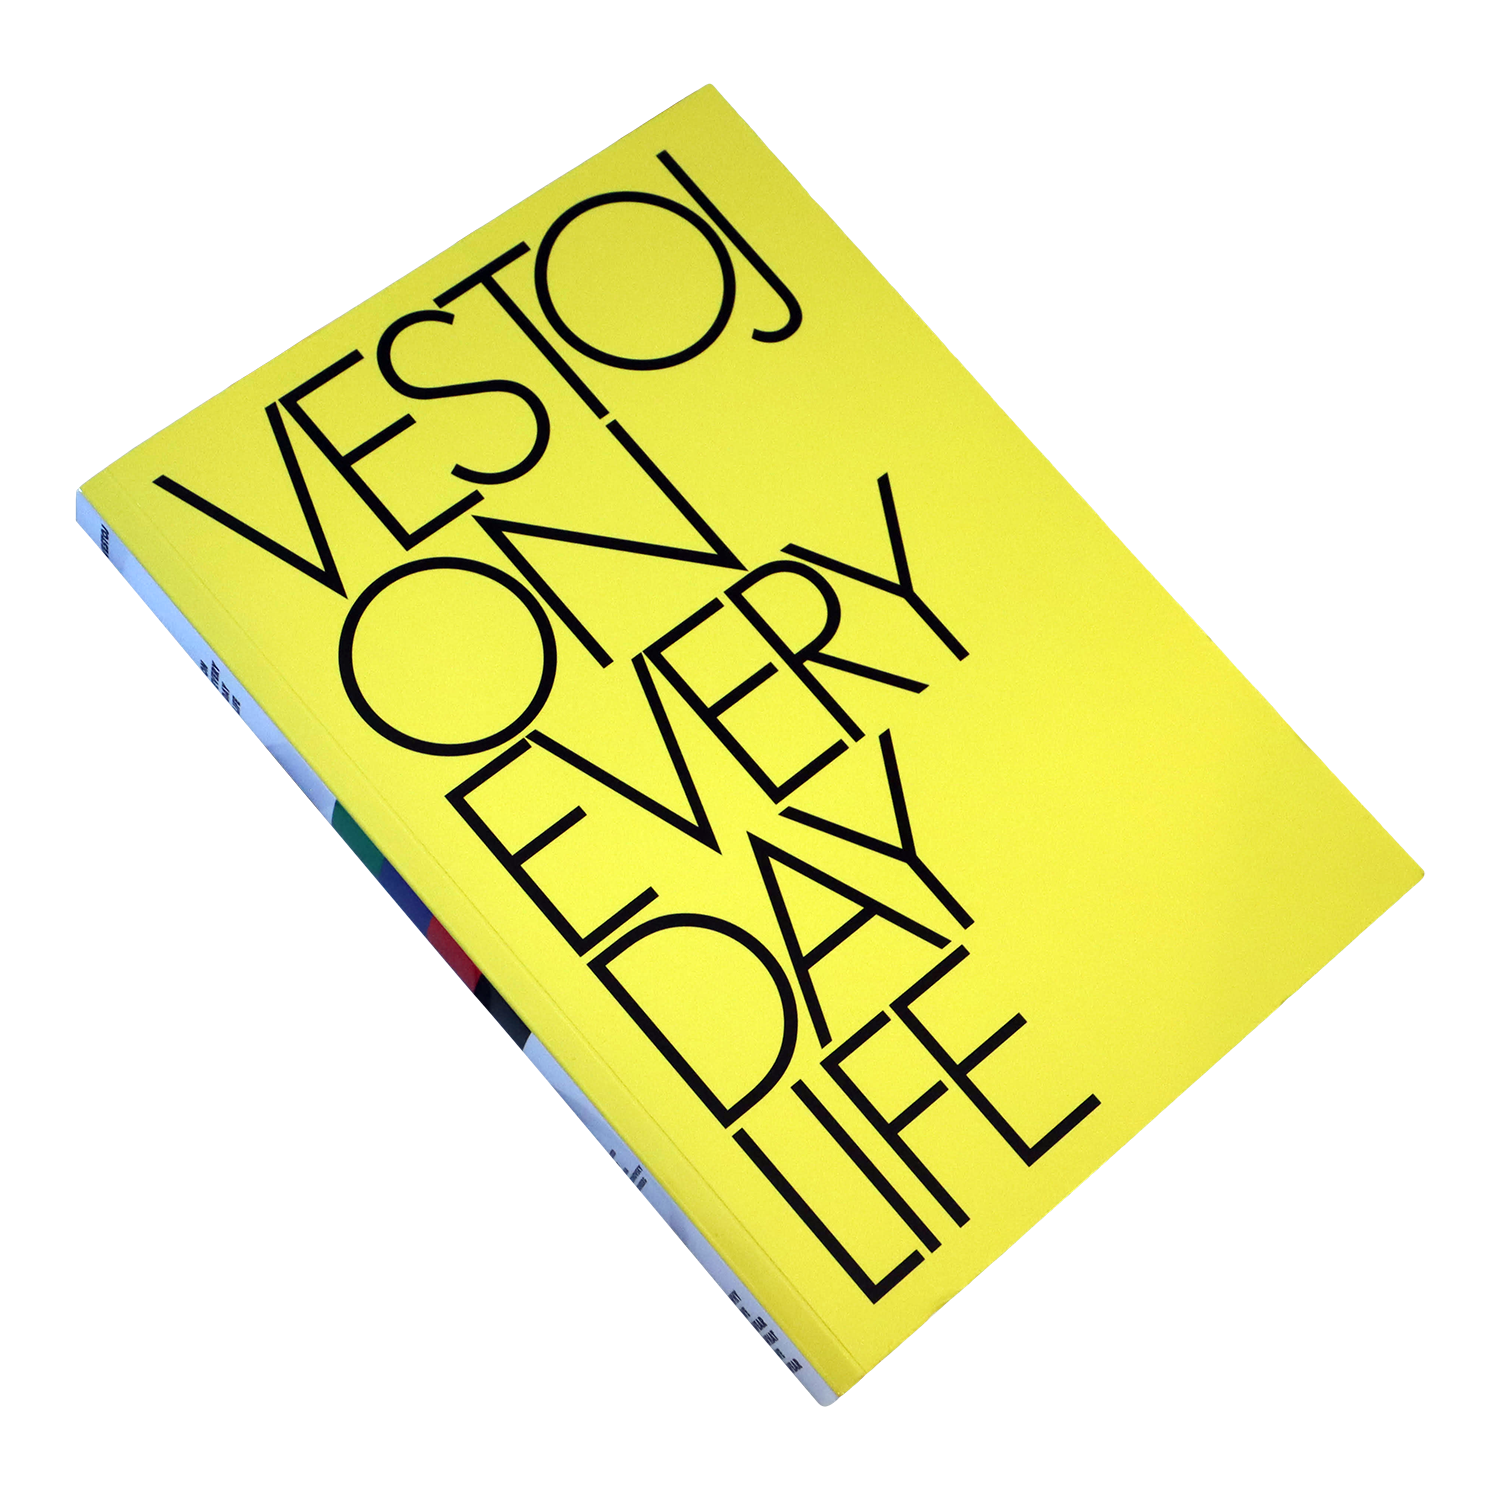 Vestoj - Issue Eleven: On Everyday Life